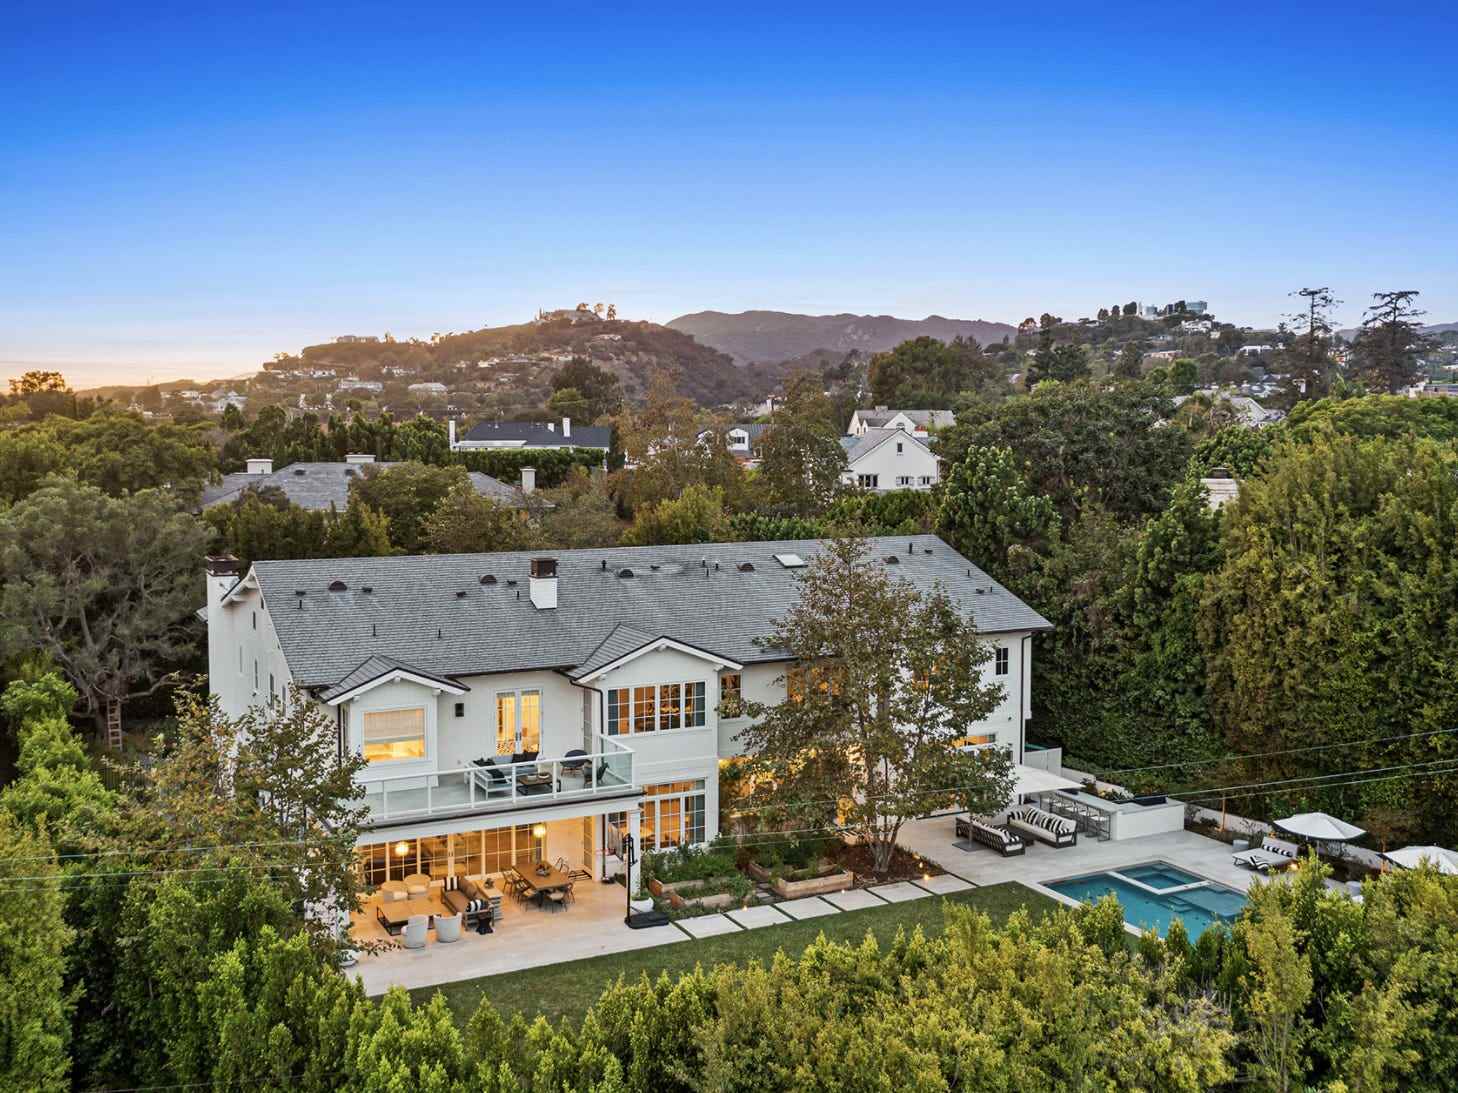 Luftaufnahme von Russell Westbrooks Villa in Los Angeles